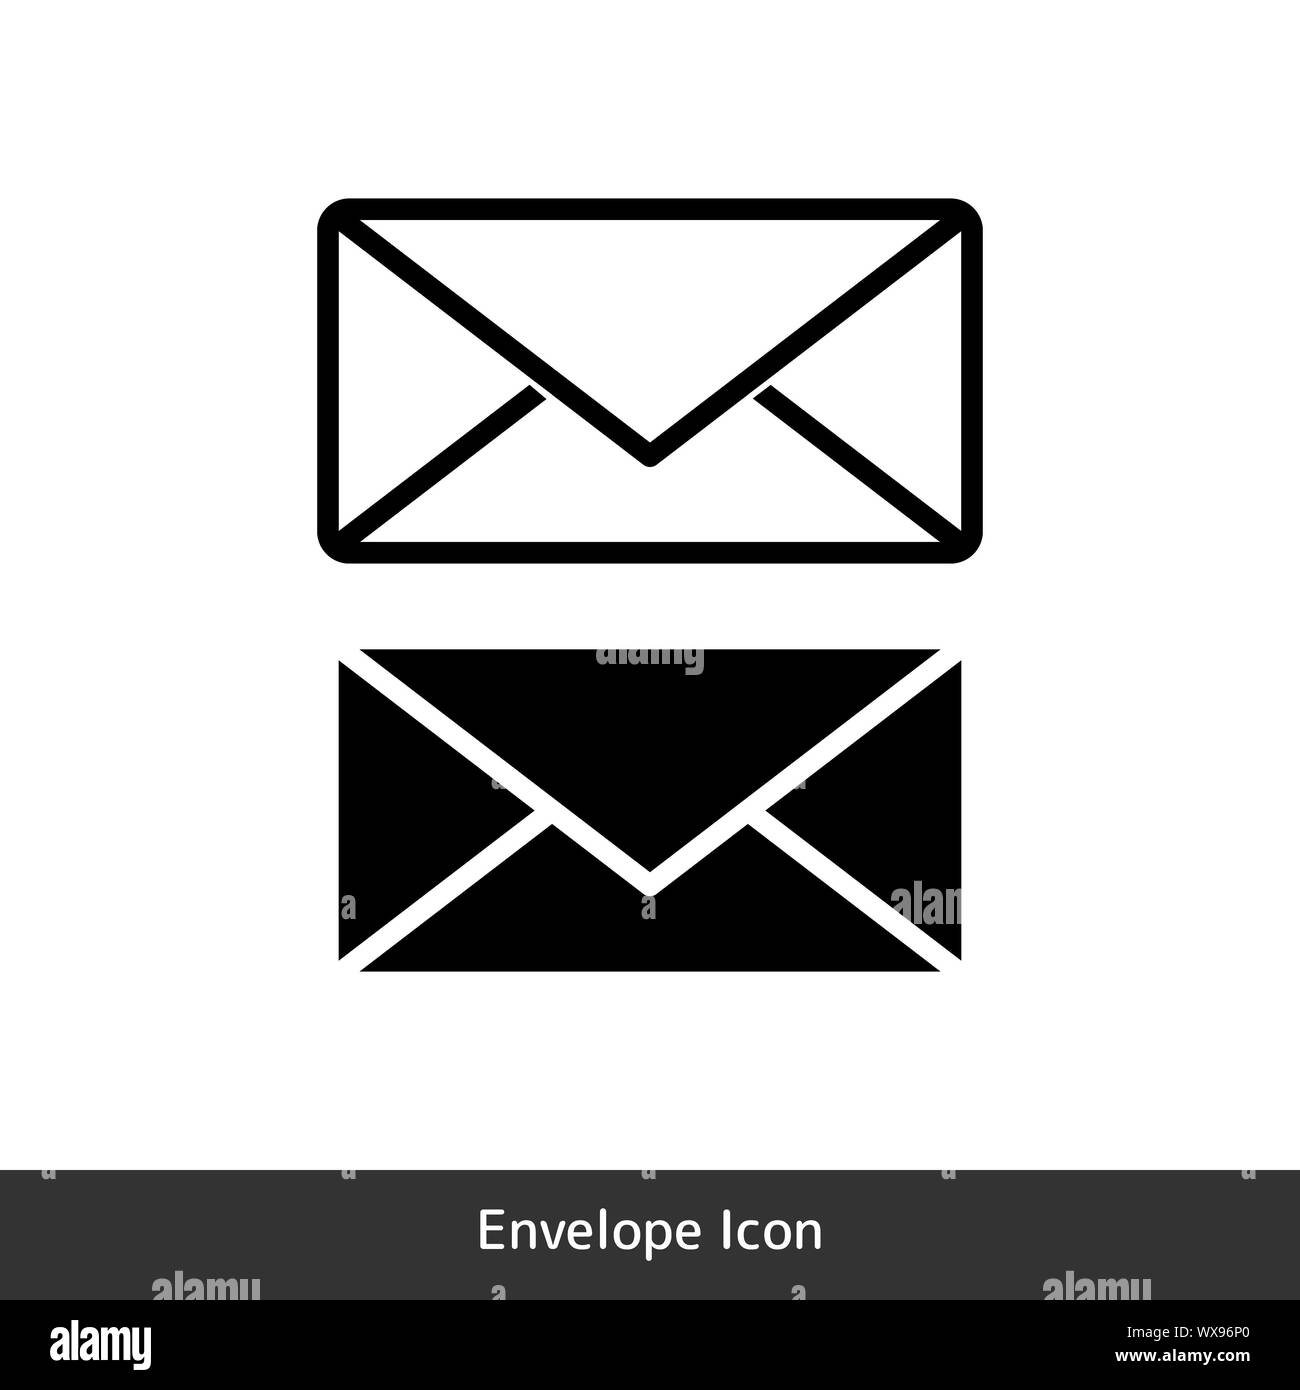 Envelope icon Banque de photographies et d'images à haute résolution - Alamy